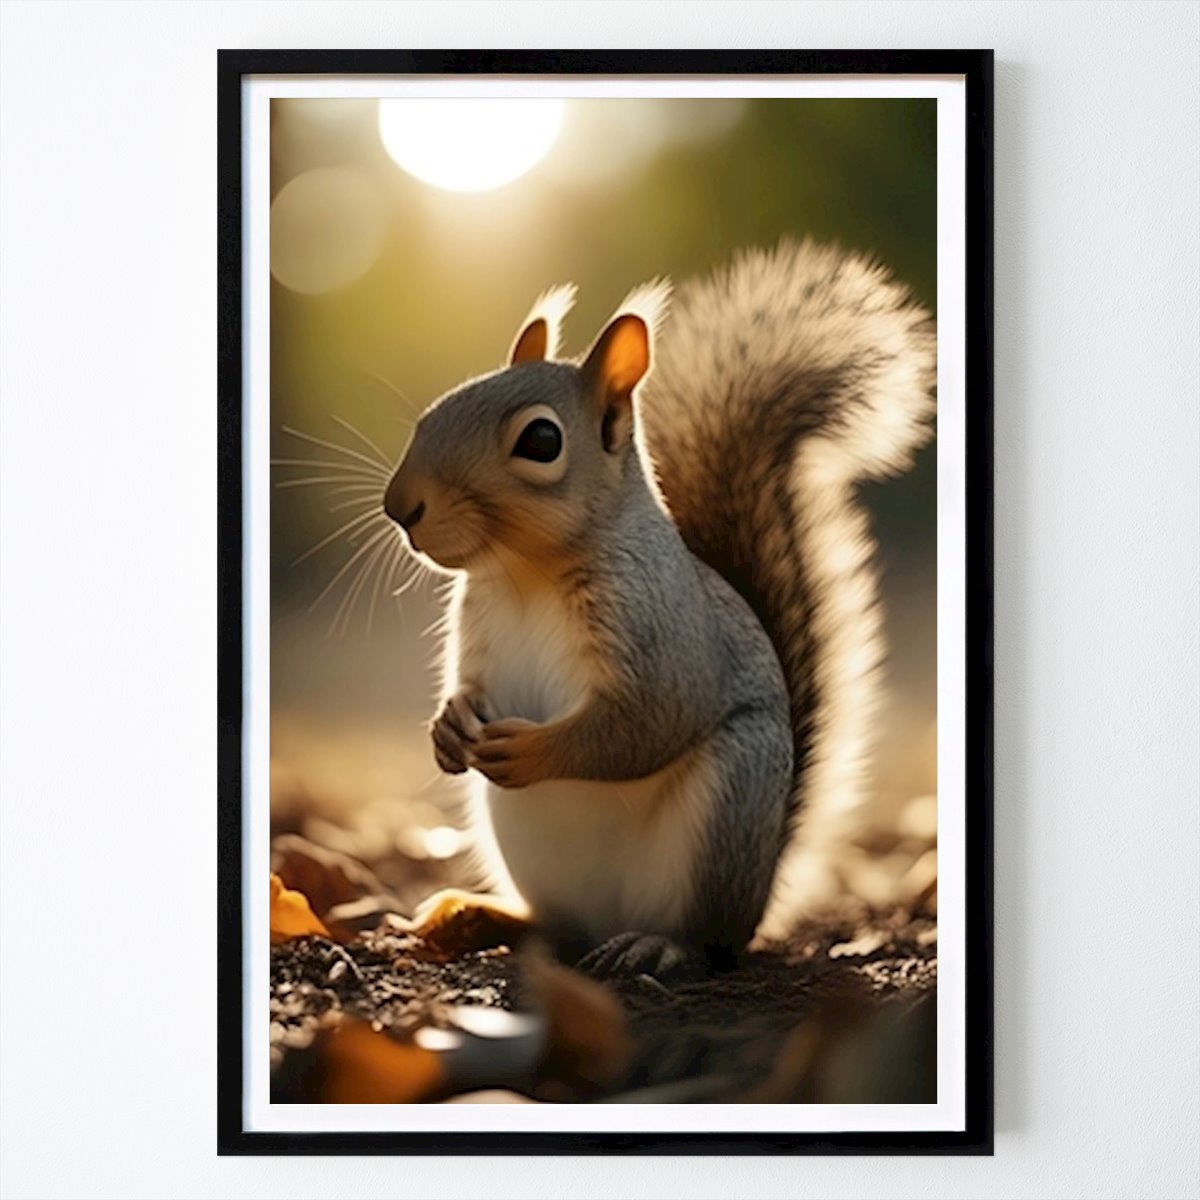 Poster: Eichhörnchen Bild von namo barteaux von Printler